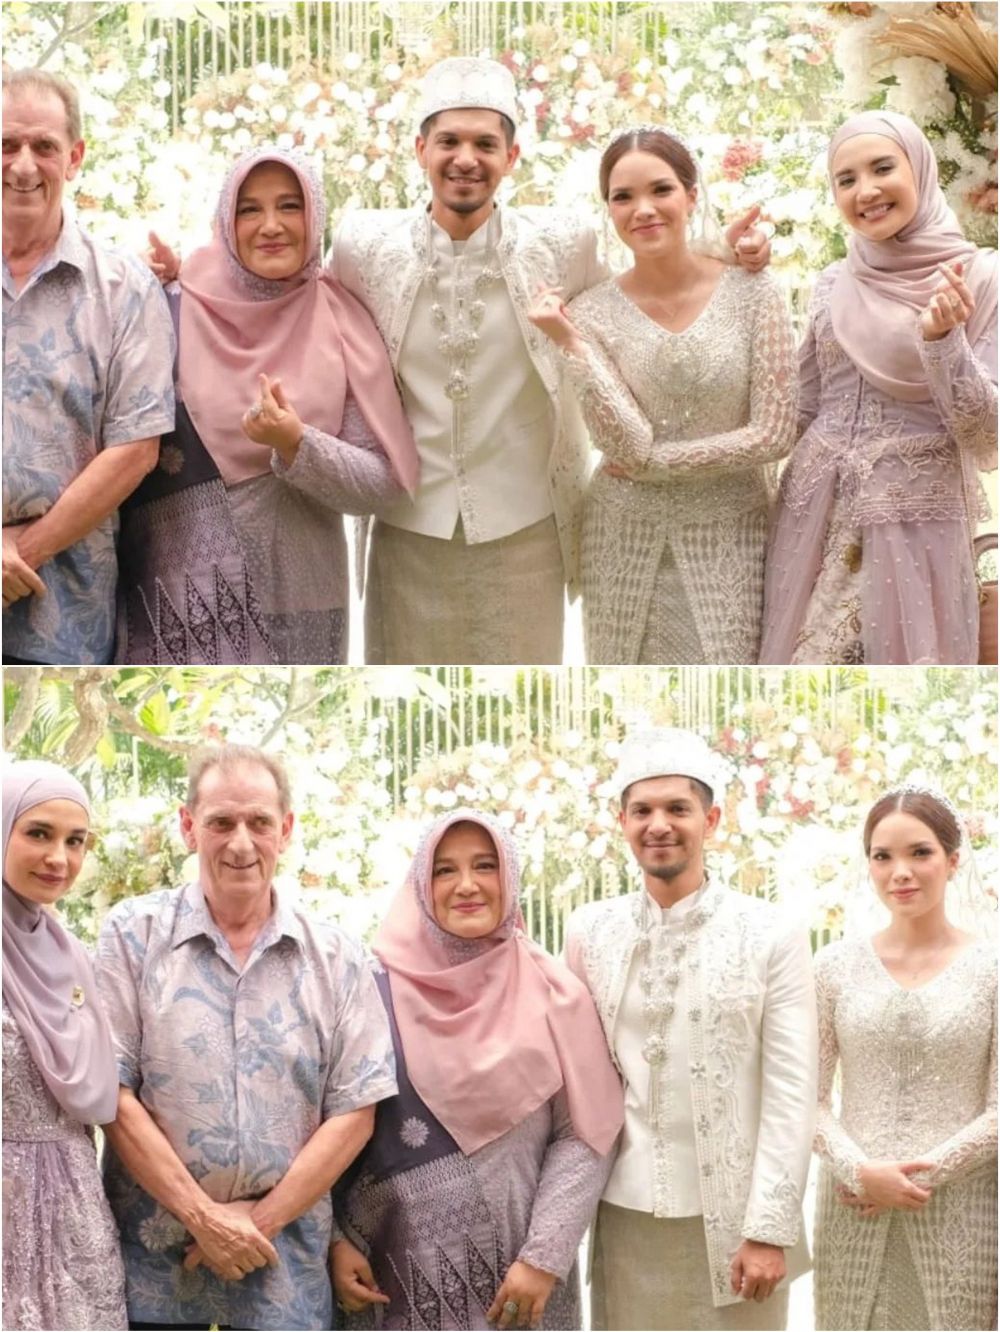 5 Tahun menduda, intip 11 potret pernikahan kedua Yusuf adik Zaskia Sungkar